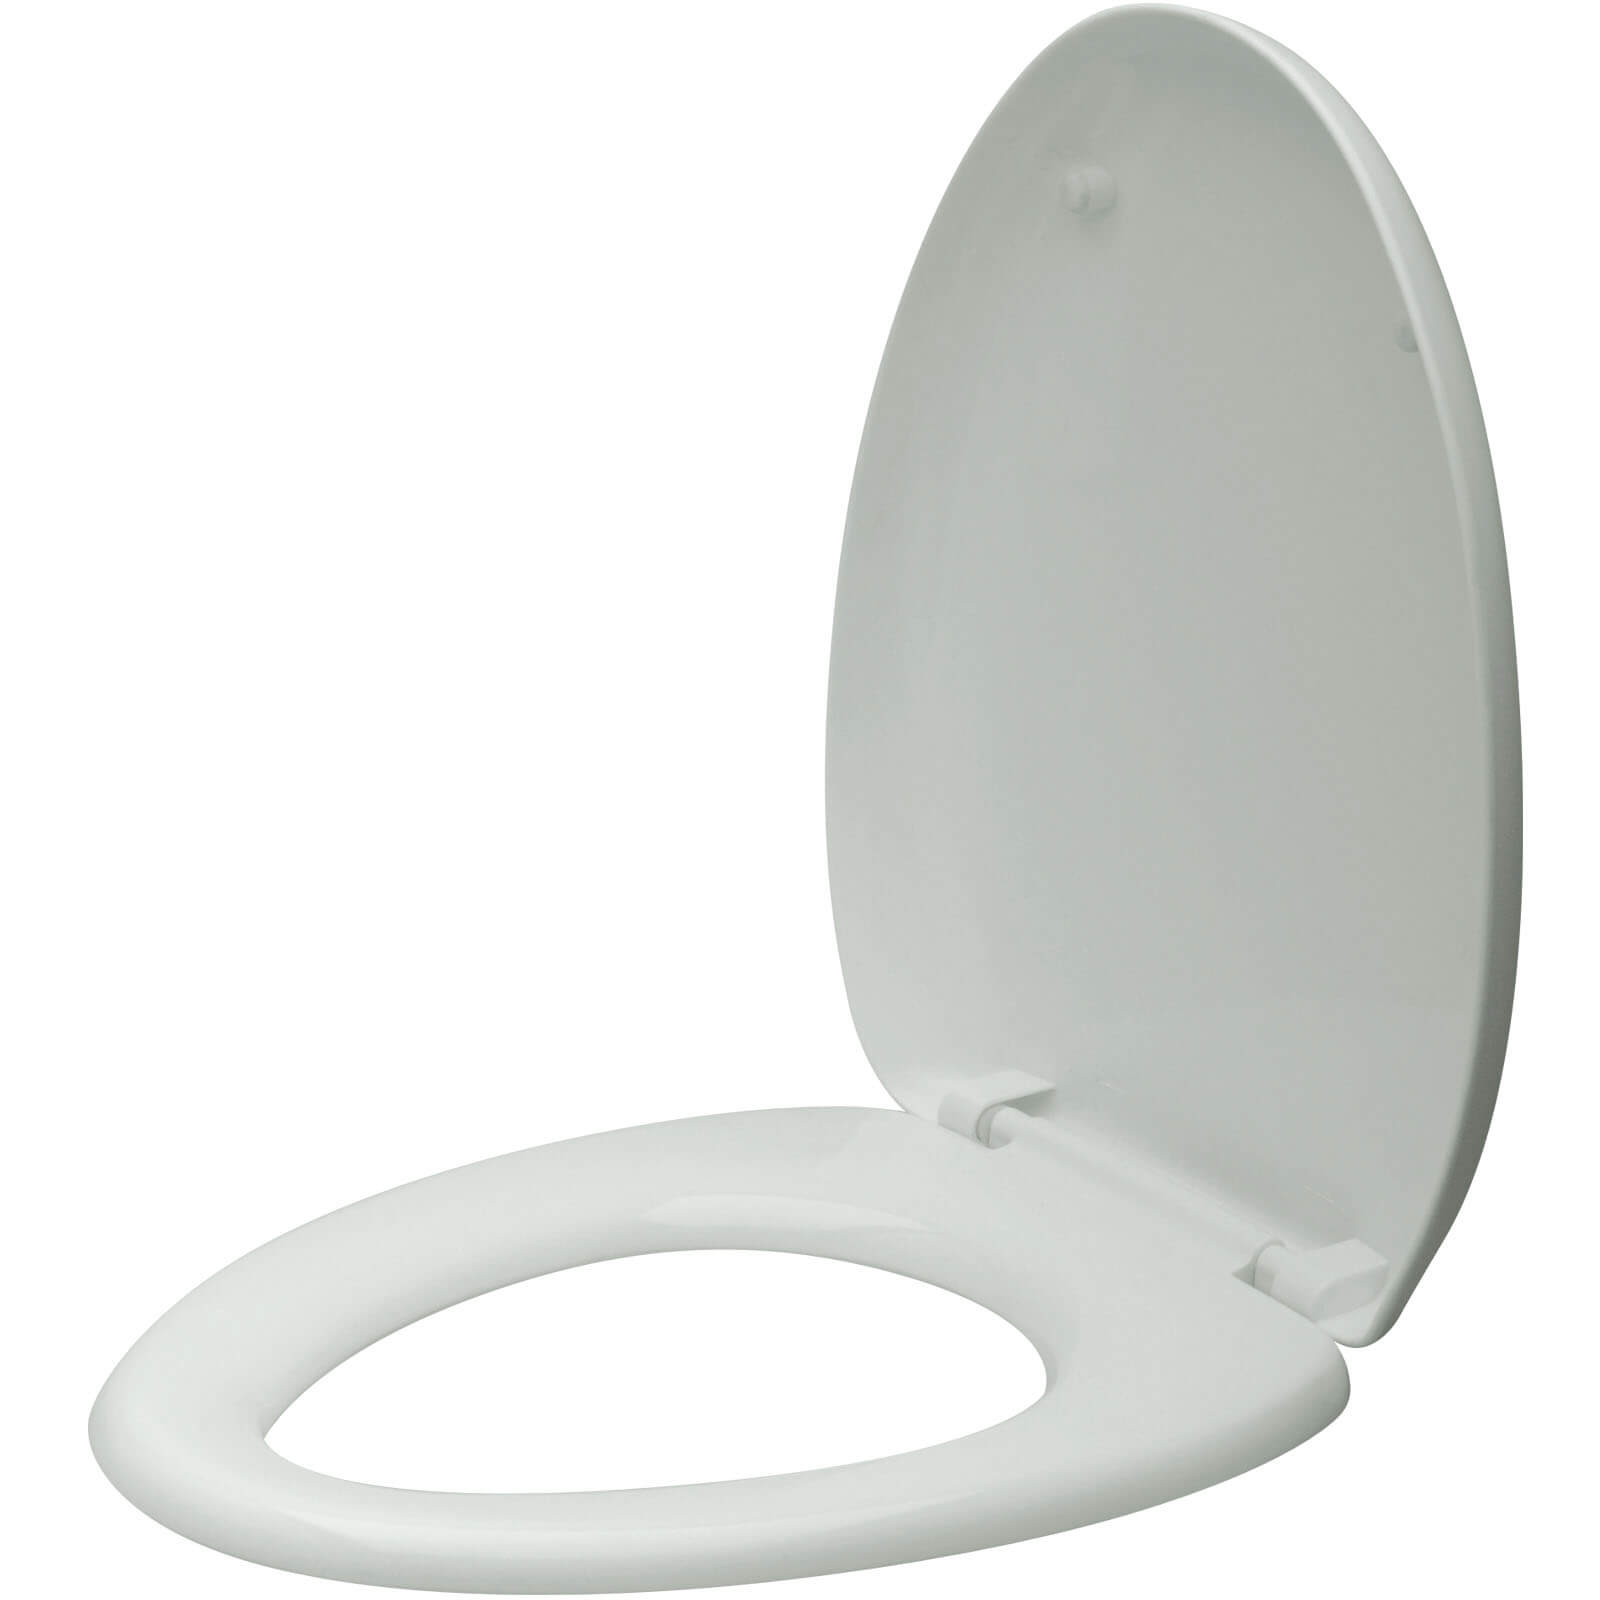  Asiento de inodoro redondo con tapa, asiento y cubierta de  cierre lento, incluye dos juegos de piezas, se adapta a todos los inodoros  redondos estándar, cierre silencioso, de plástico, color blanco 